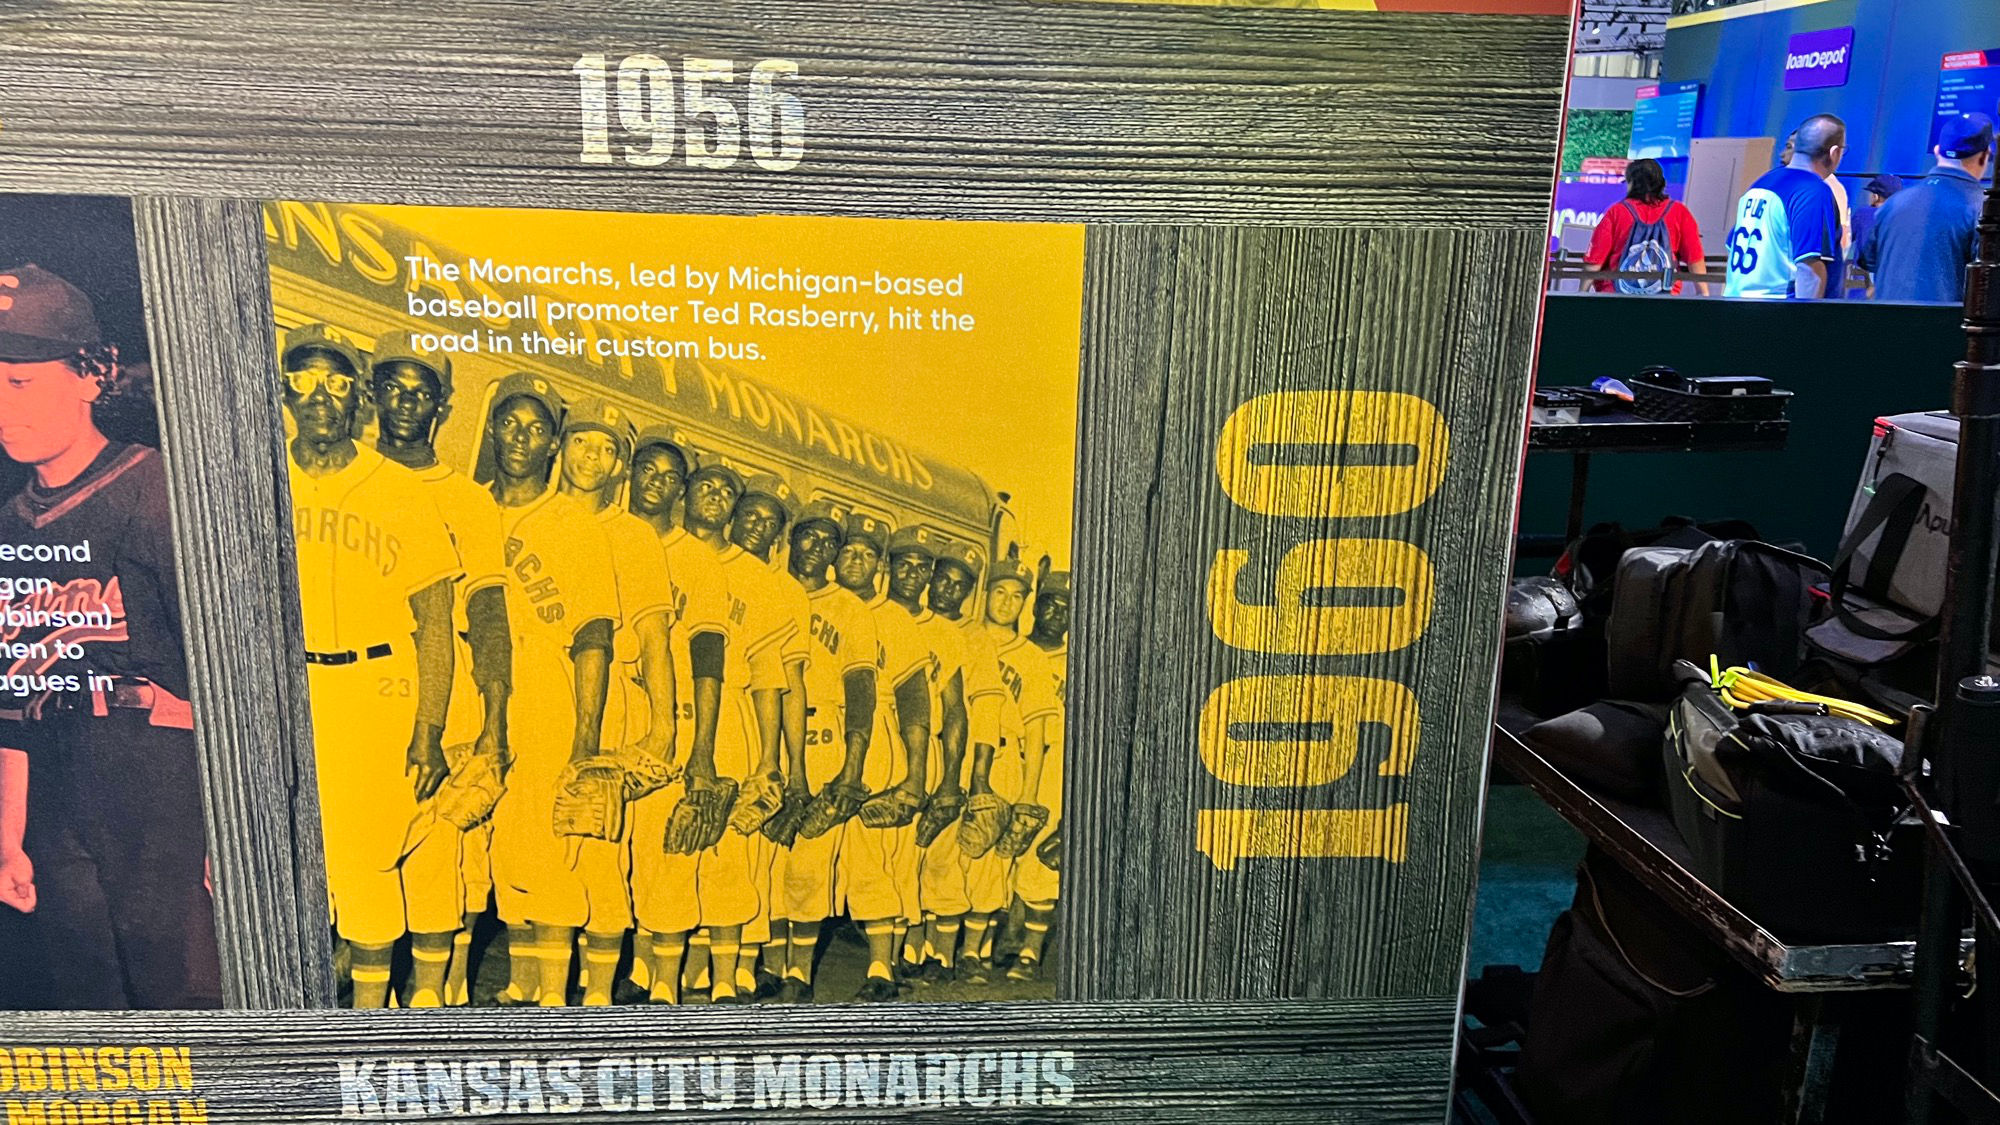 Negro Leagues Kansas City Monarchs 1956